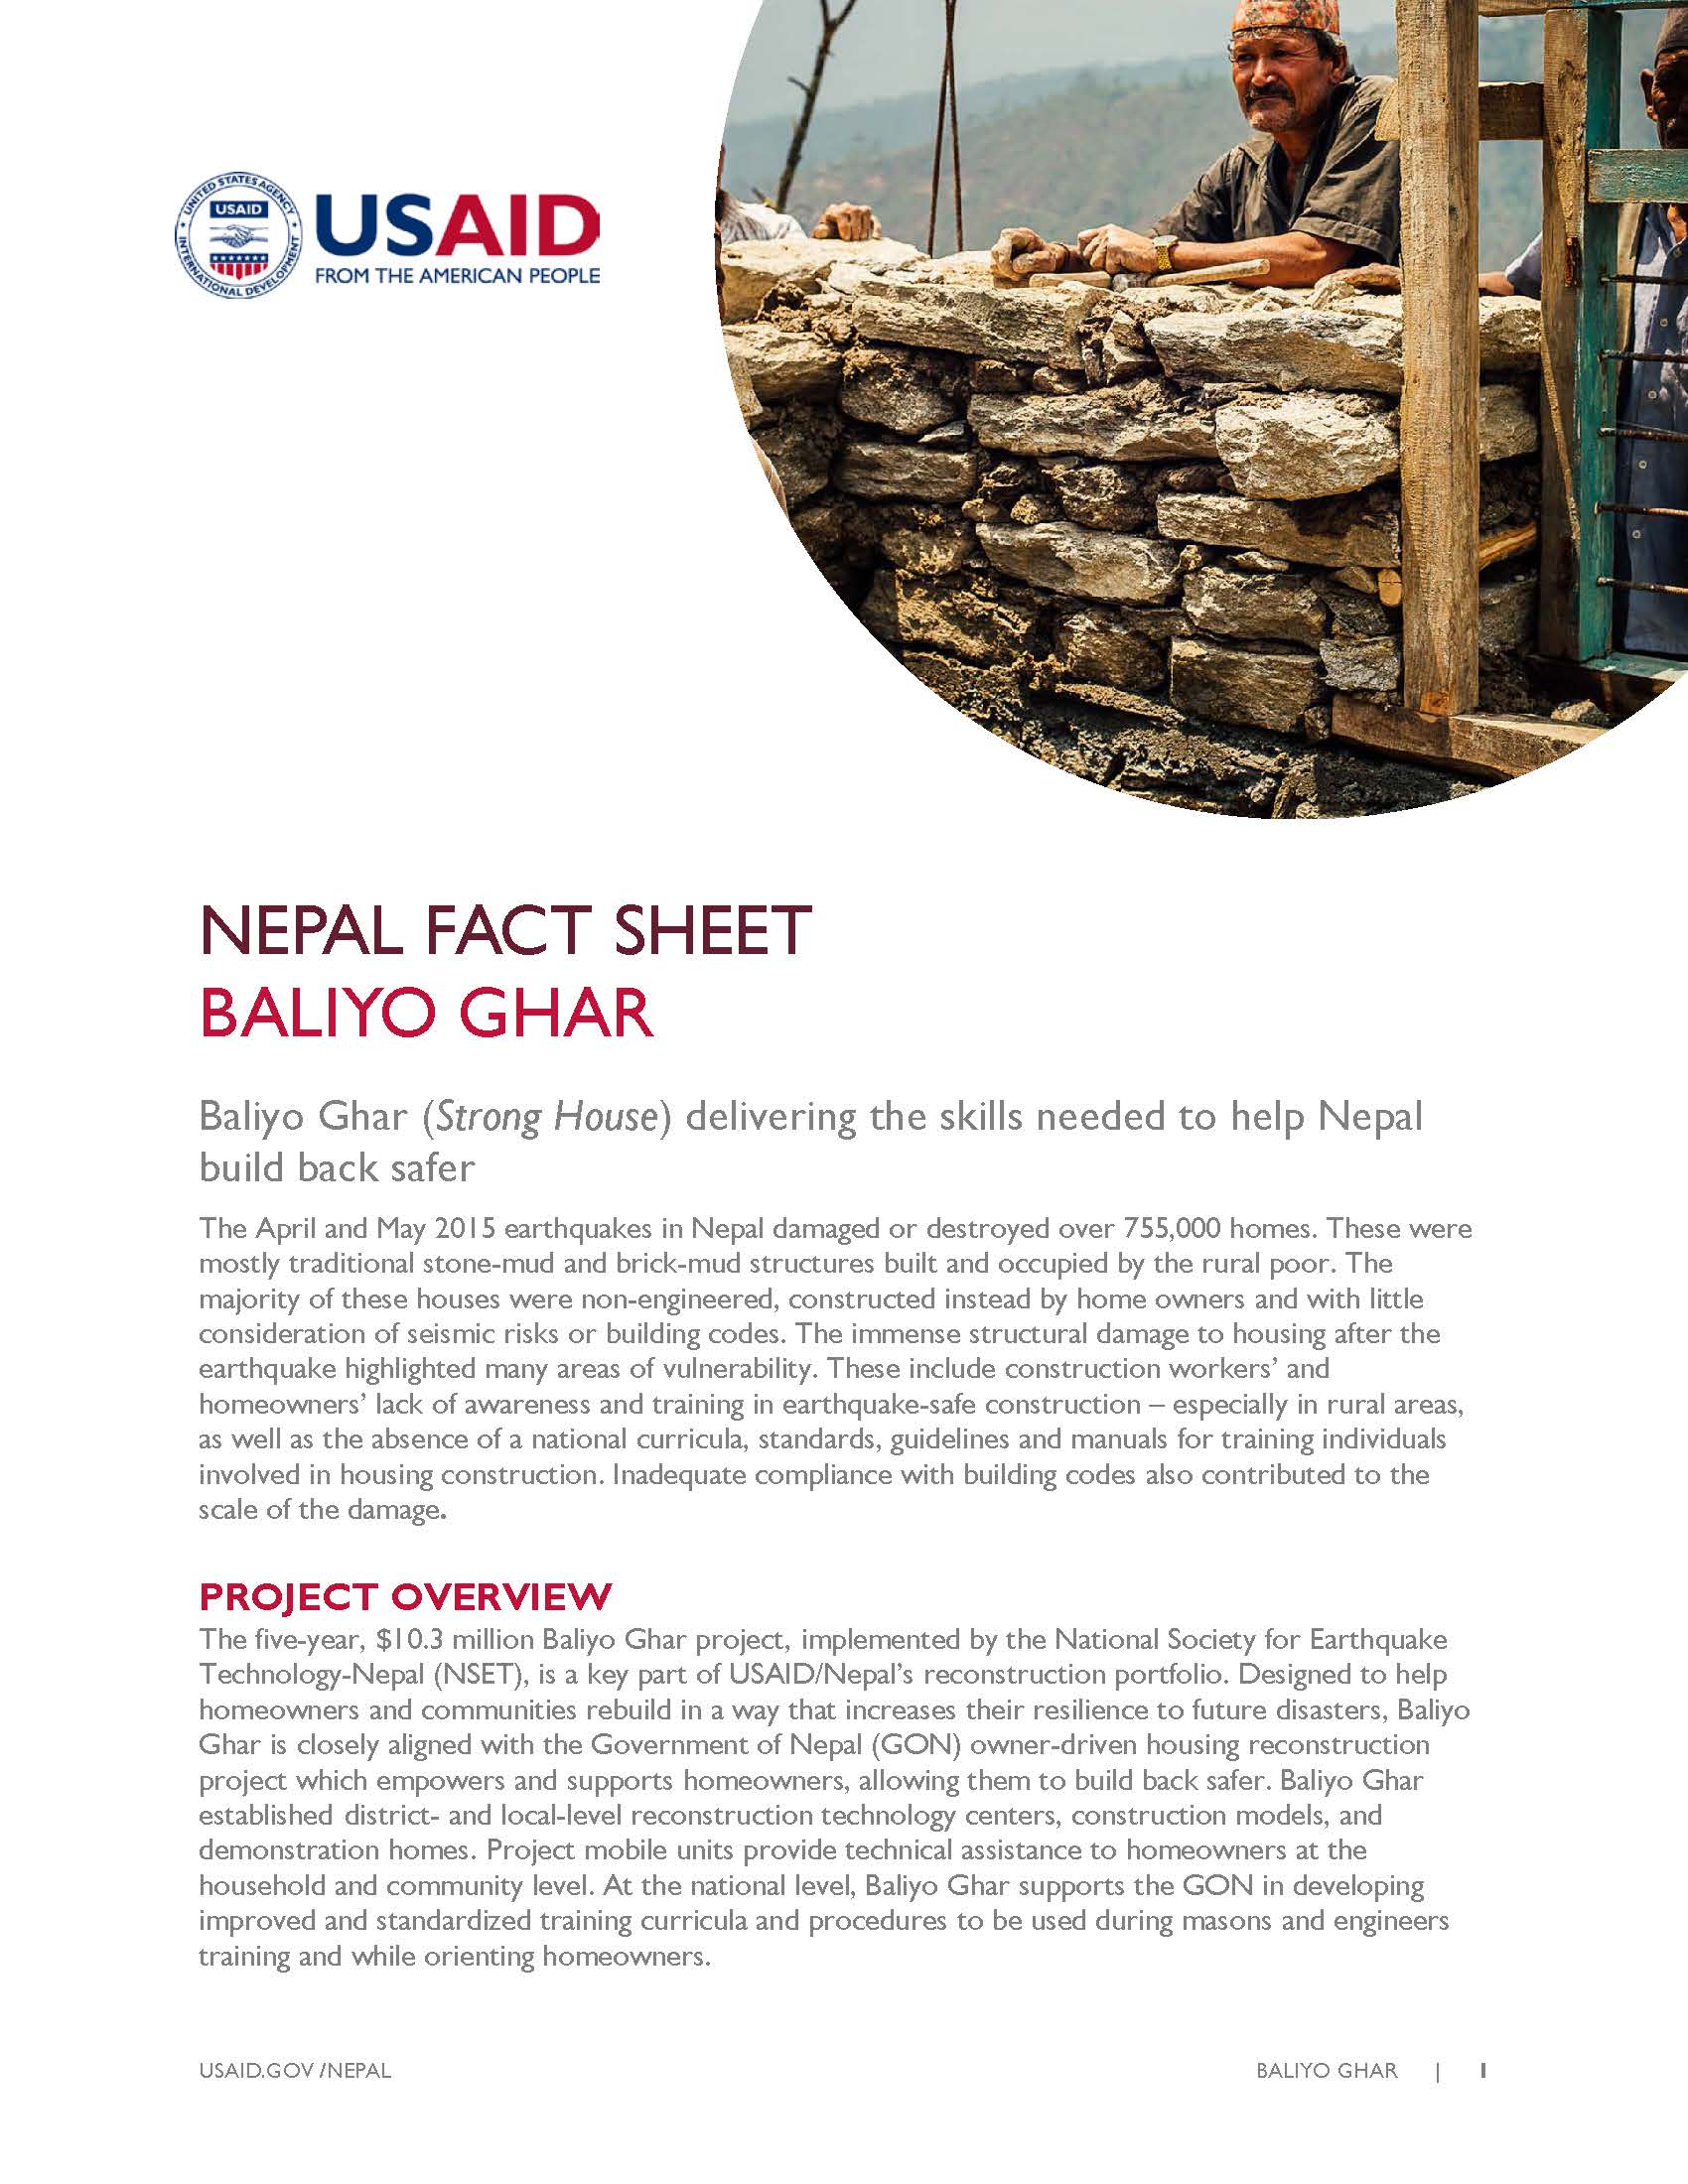 Fact Sheet: BALIYO GHAR